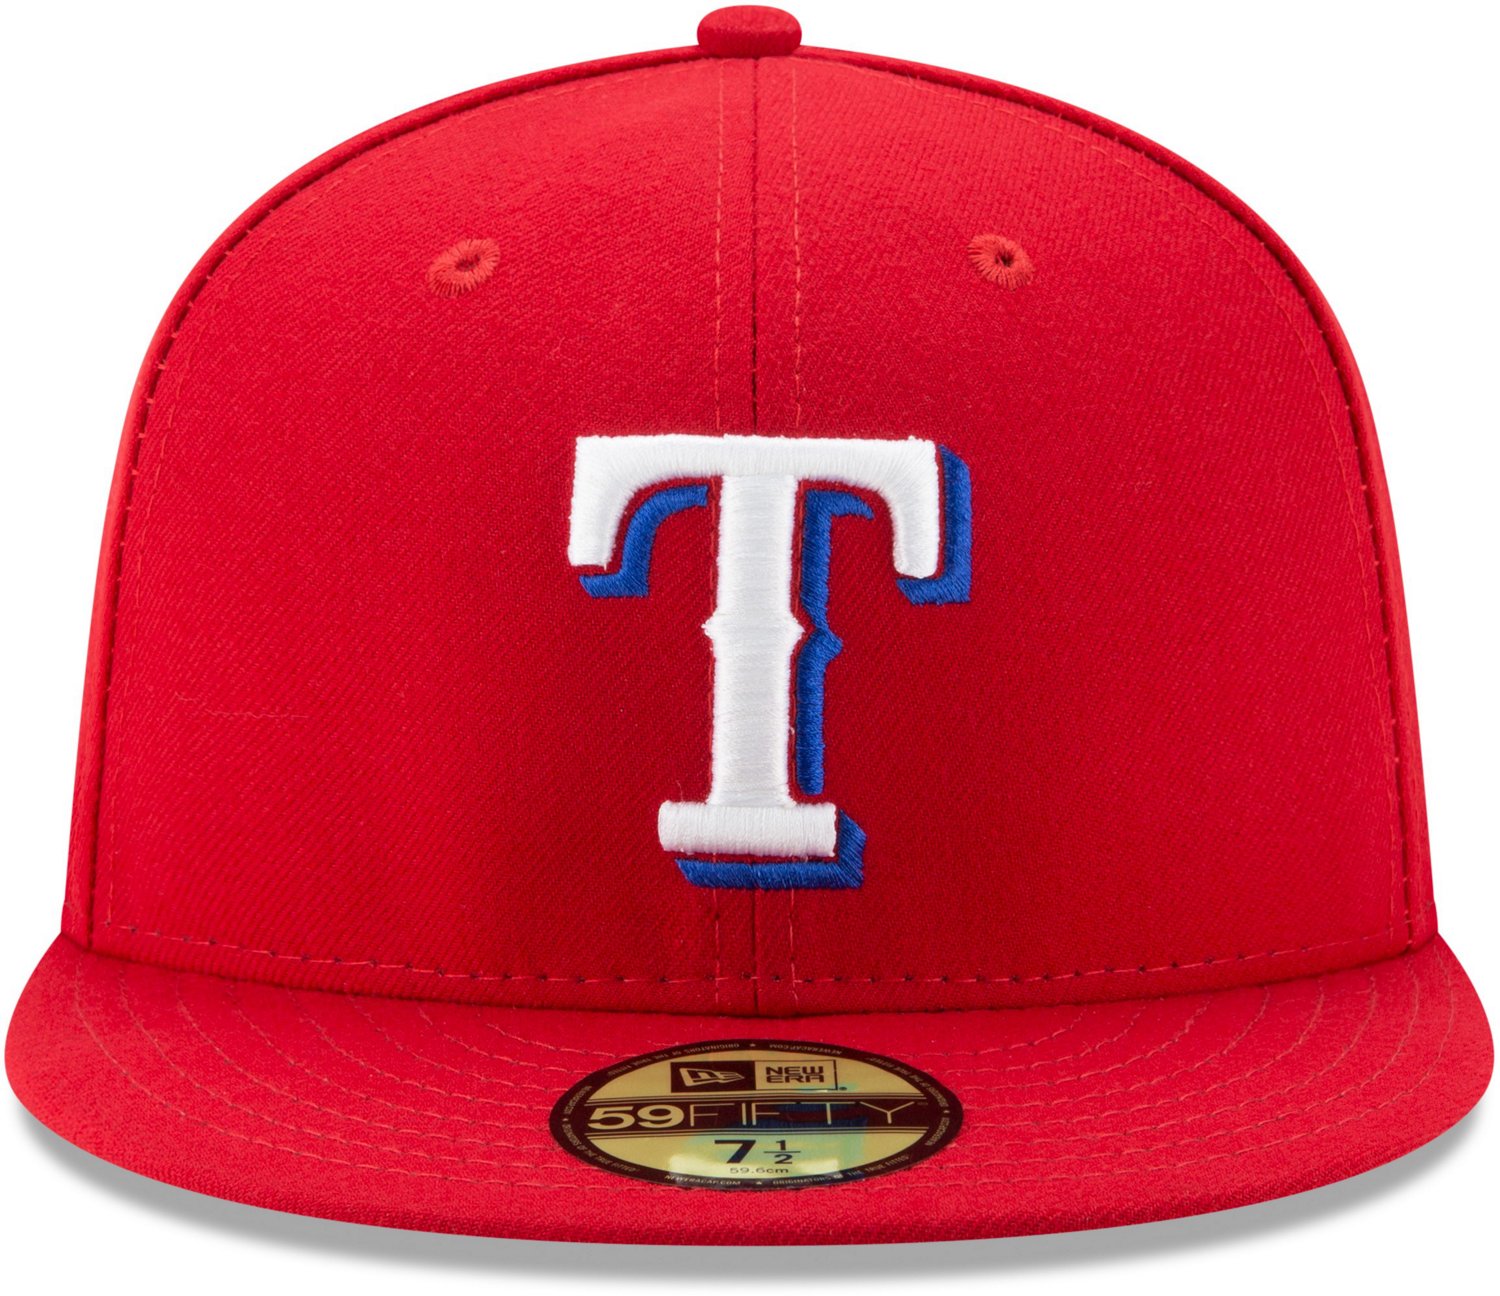 New Era Women's Texas Rangers Red Activewear Tank Top